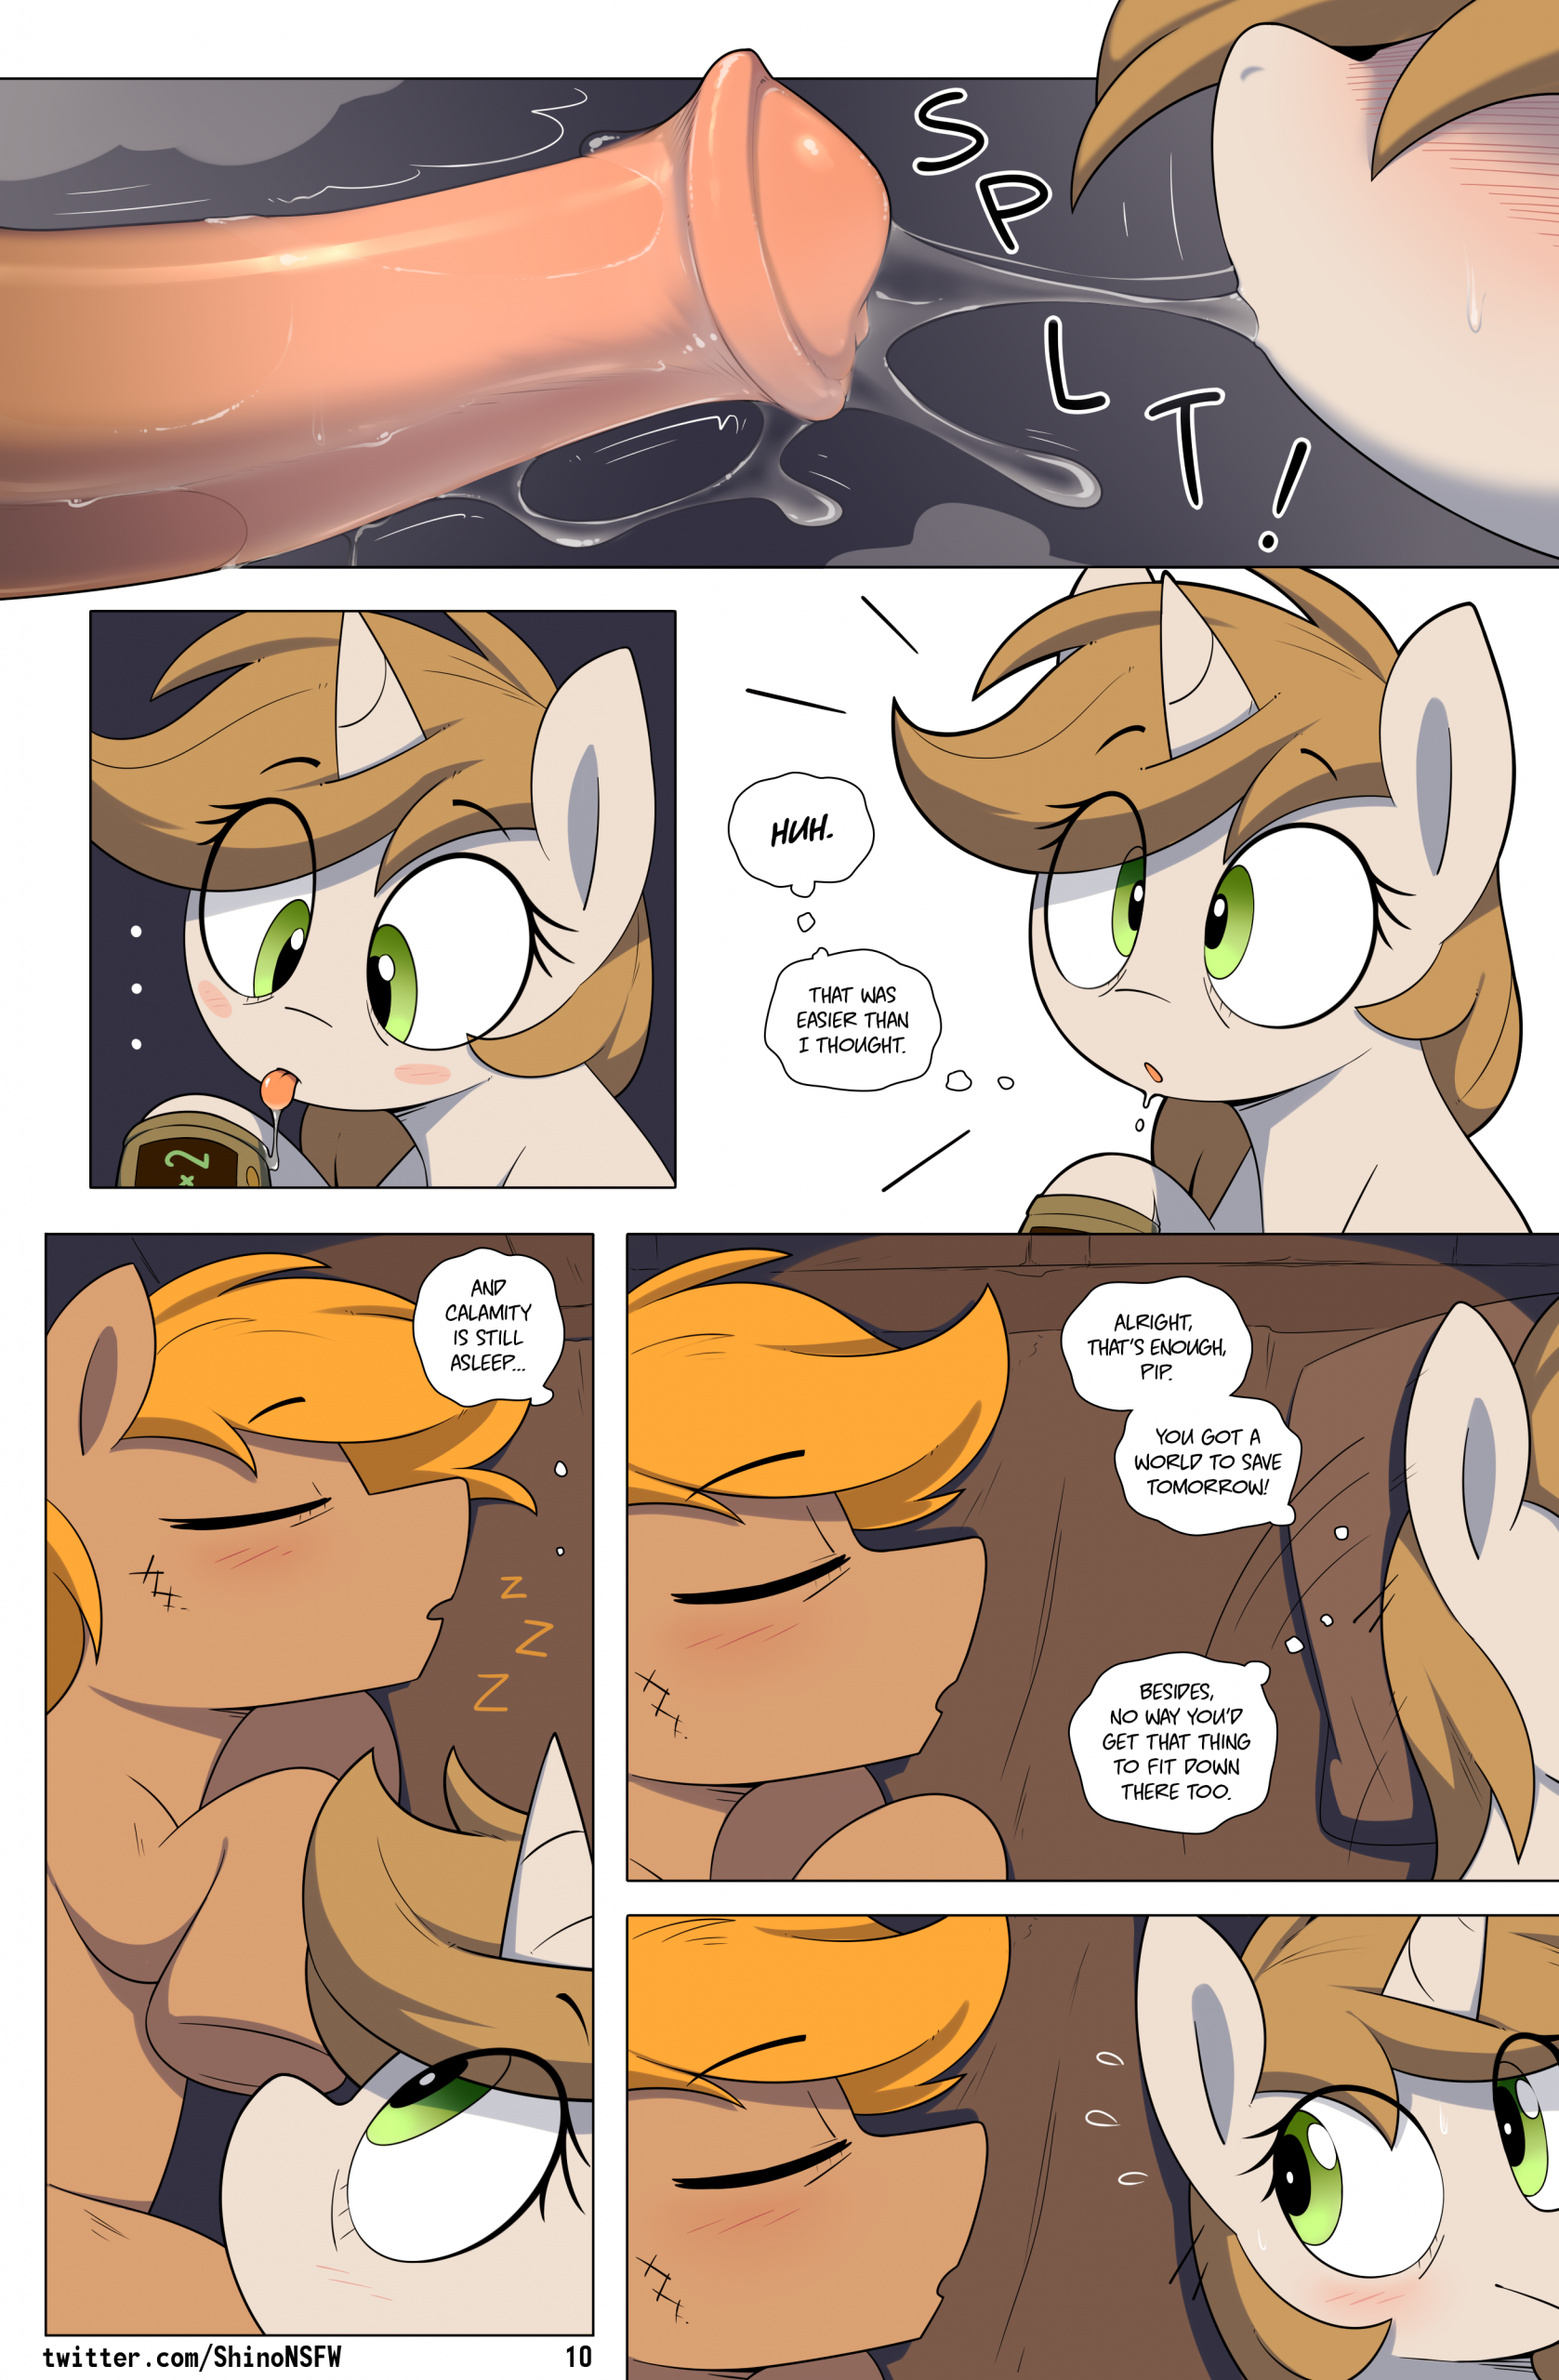 Fallout: Equestria - Chain Reaction porn comic picture 11